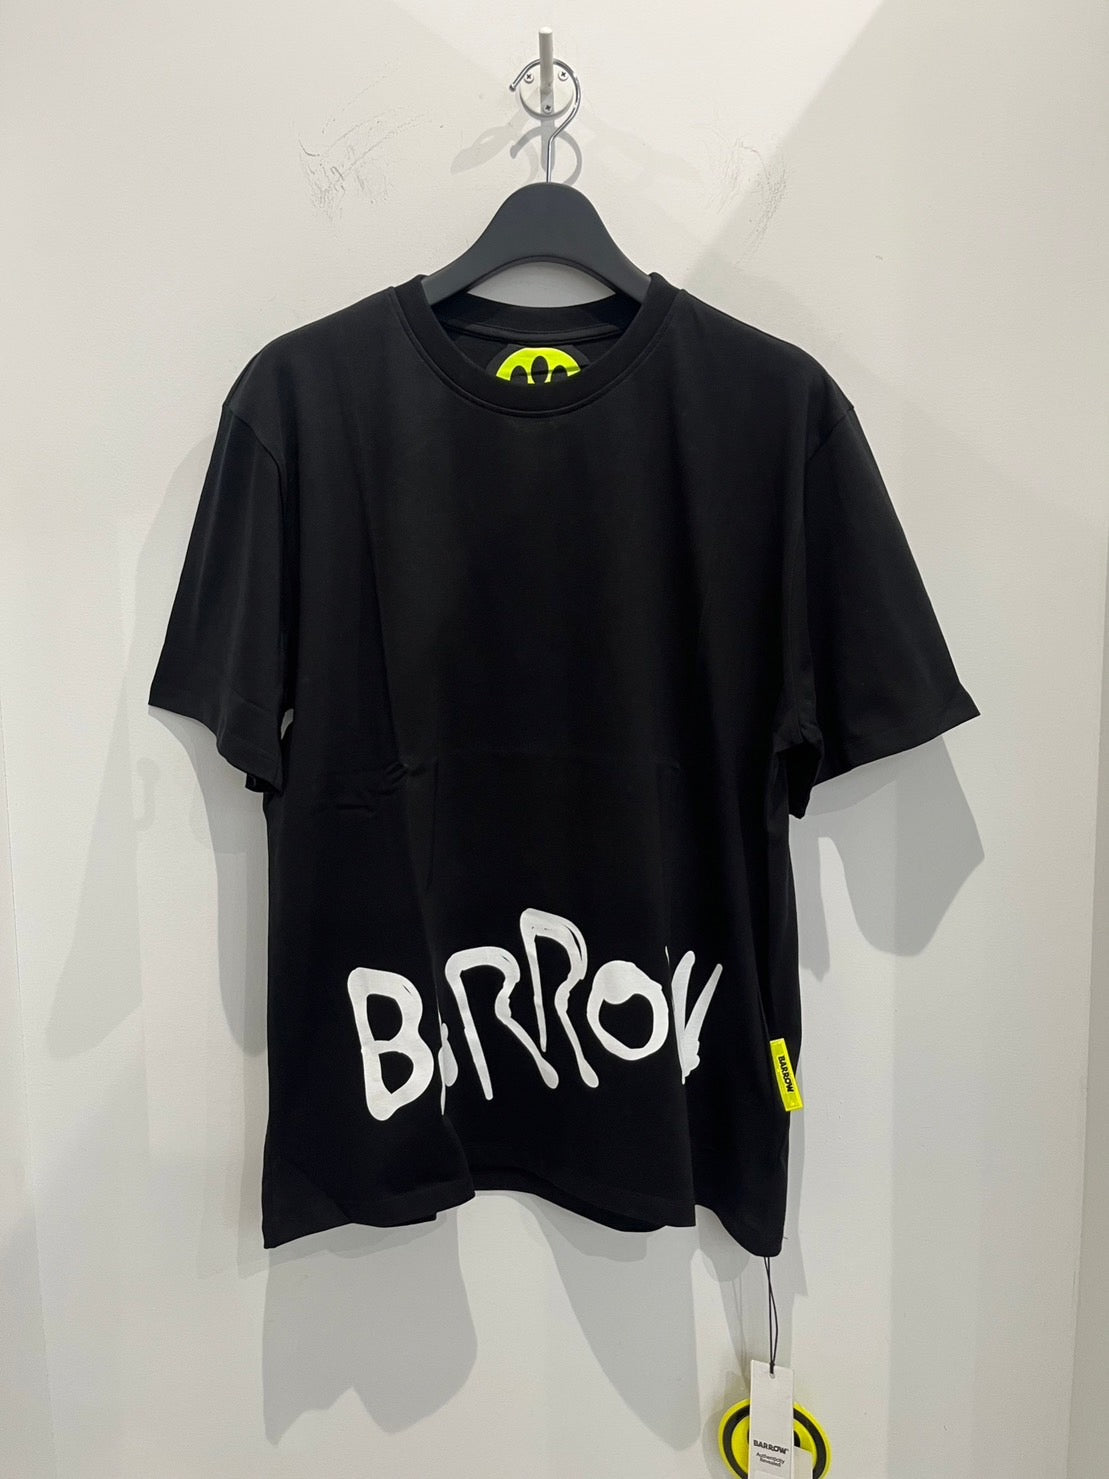 BARROW/バロー Tシャツ <34038> ブラック(黒)